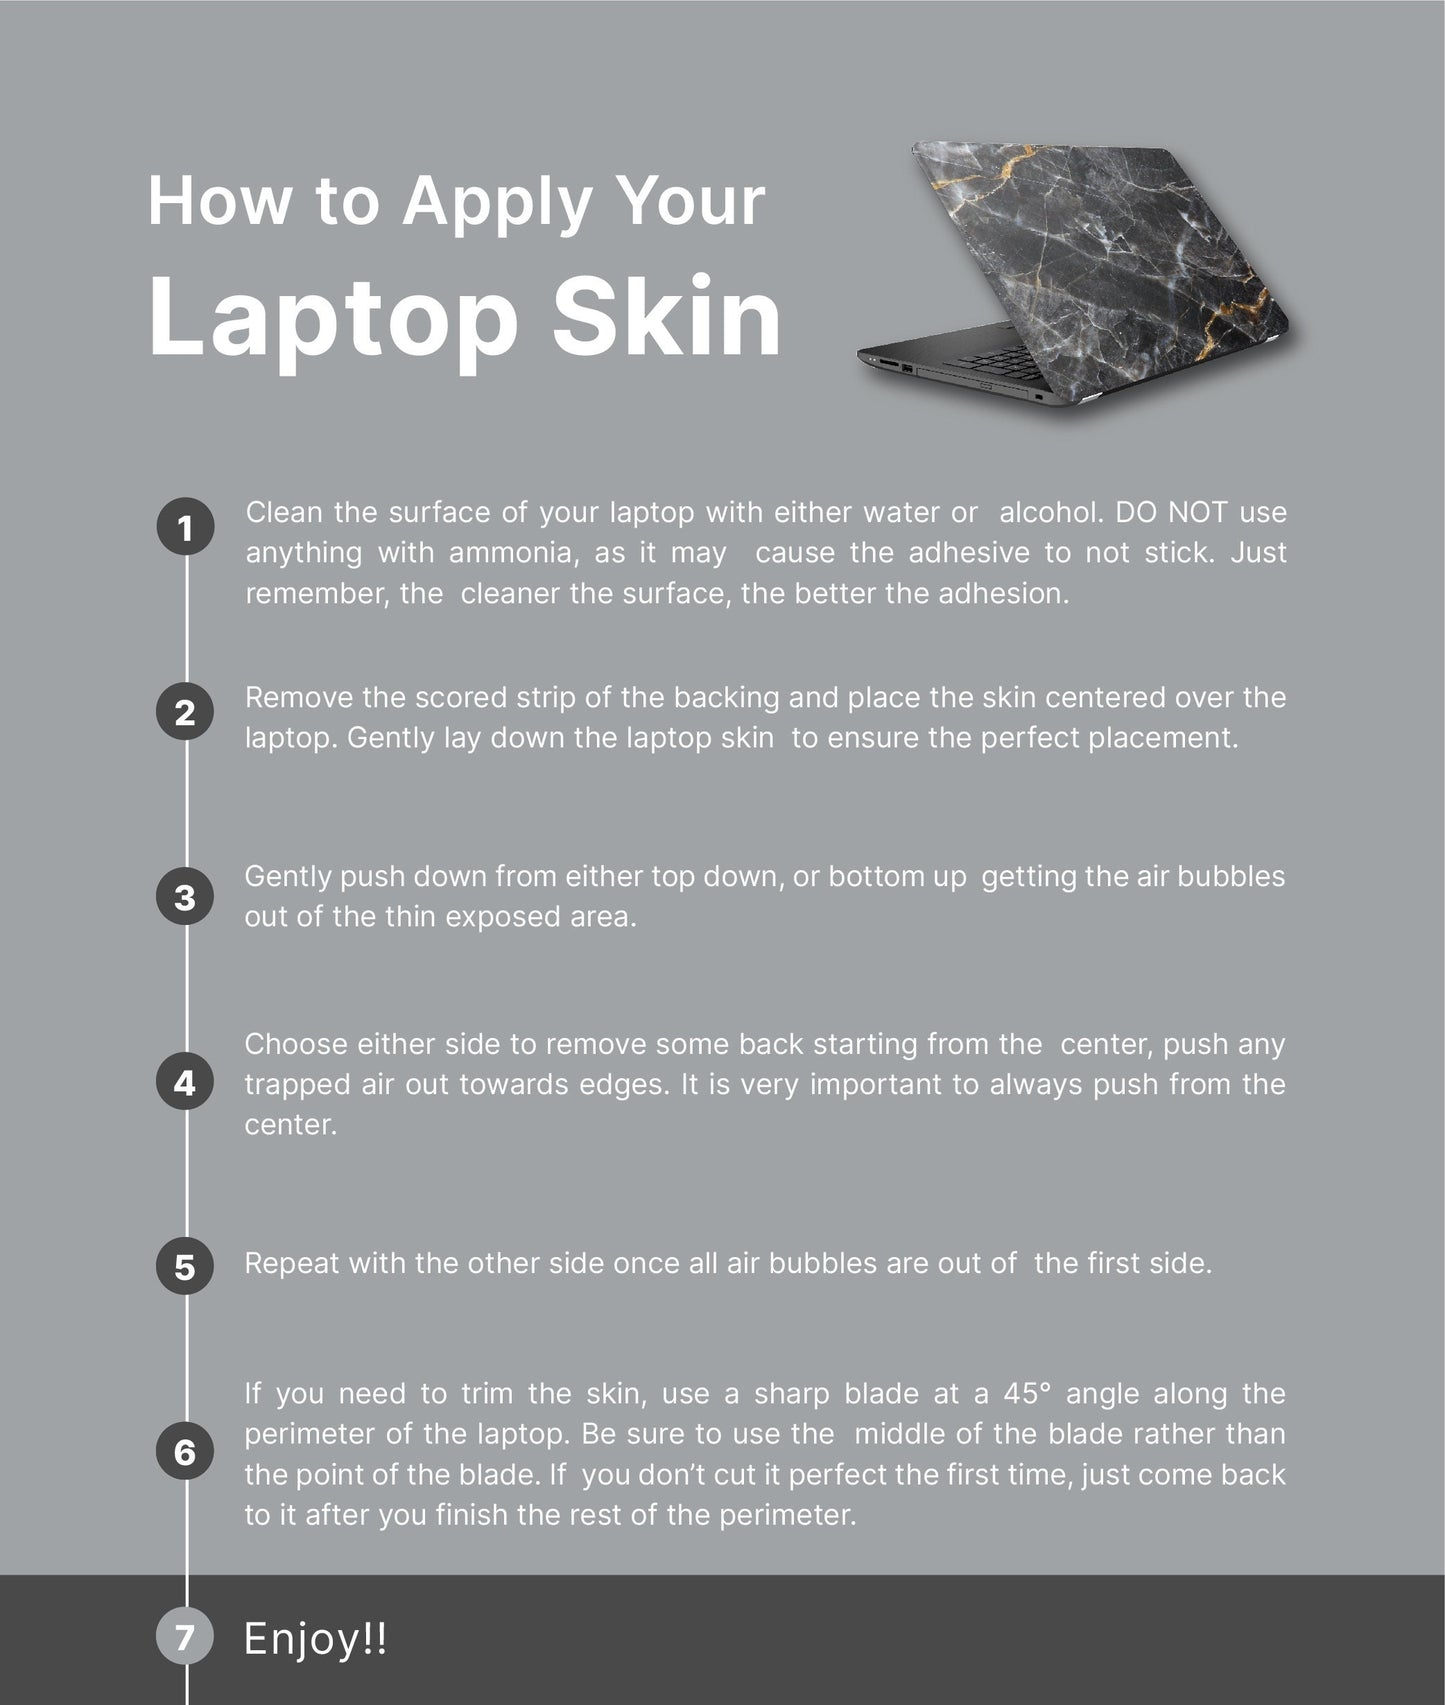 Boho Sunset Laptop Skin, Laptop Cover, Laptop Skins, Removable Laptop Skins, Laptop Decal, Customized Laptop Skin, Laptop Stickers 214